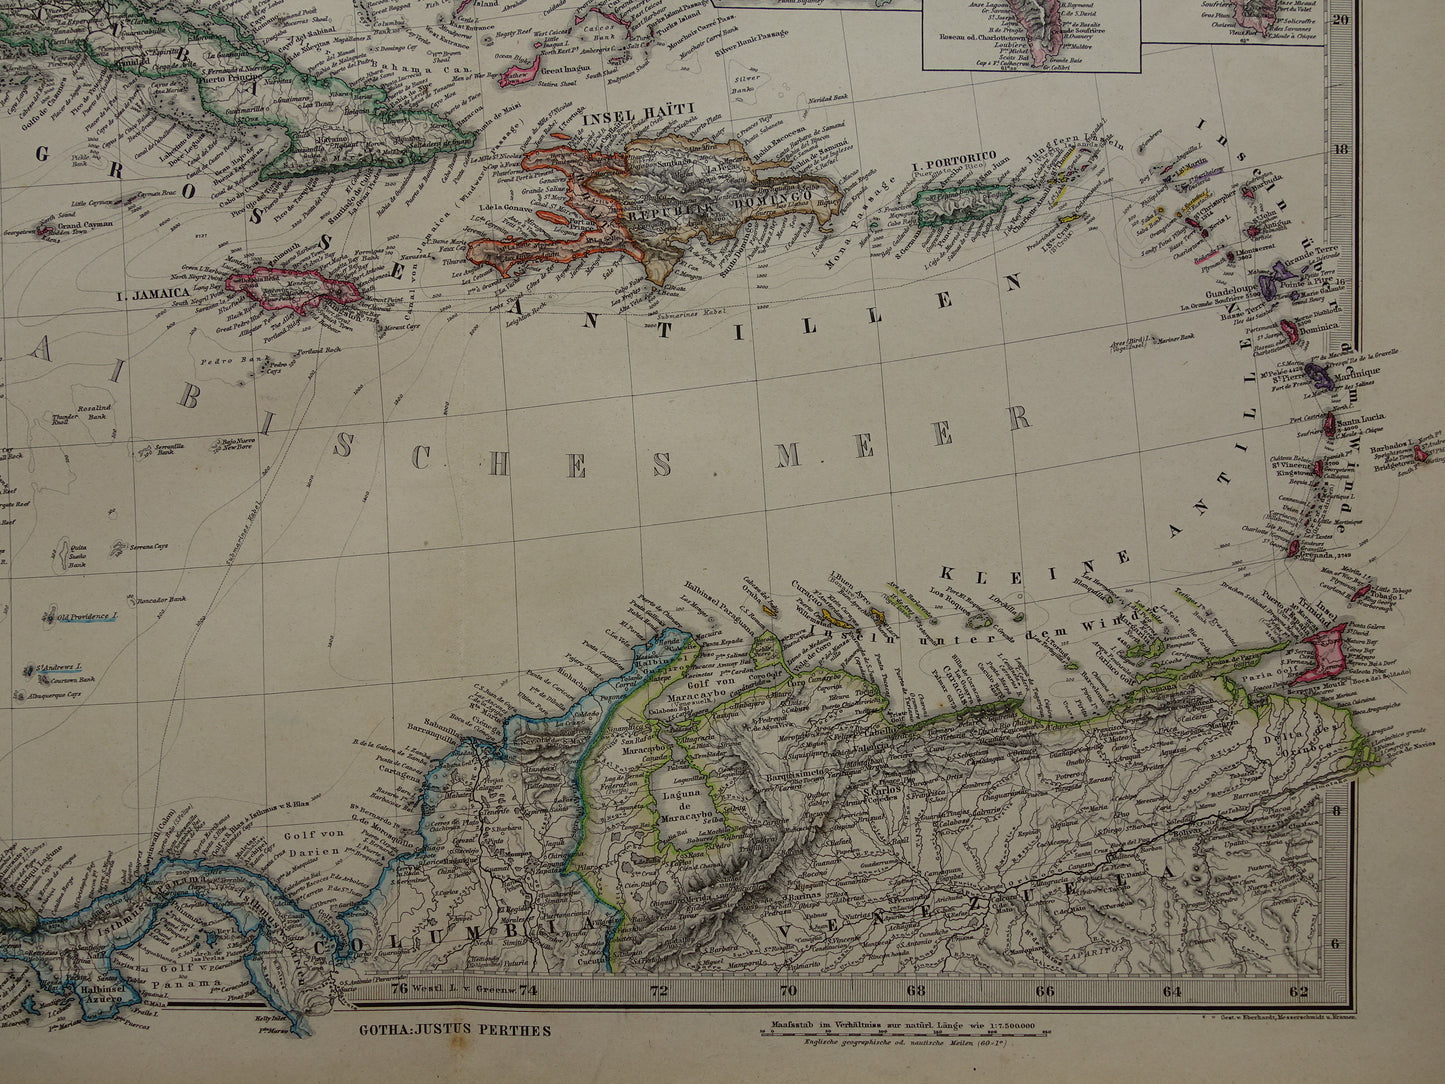 Oude kaart van de VS 1886 originele antieke landkaart van USA Mexico Caraïben vintage historische kaarten 76x94 cm grote poster